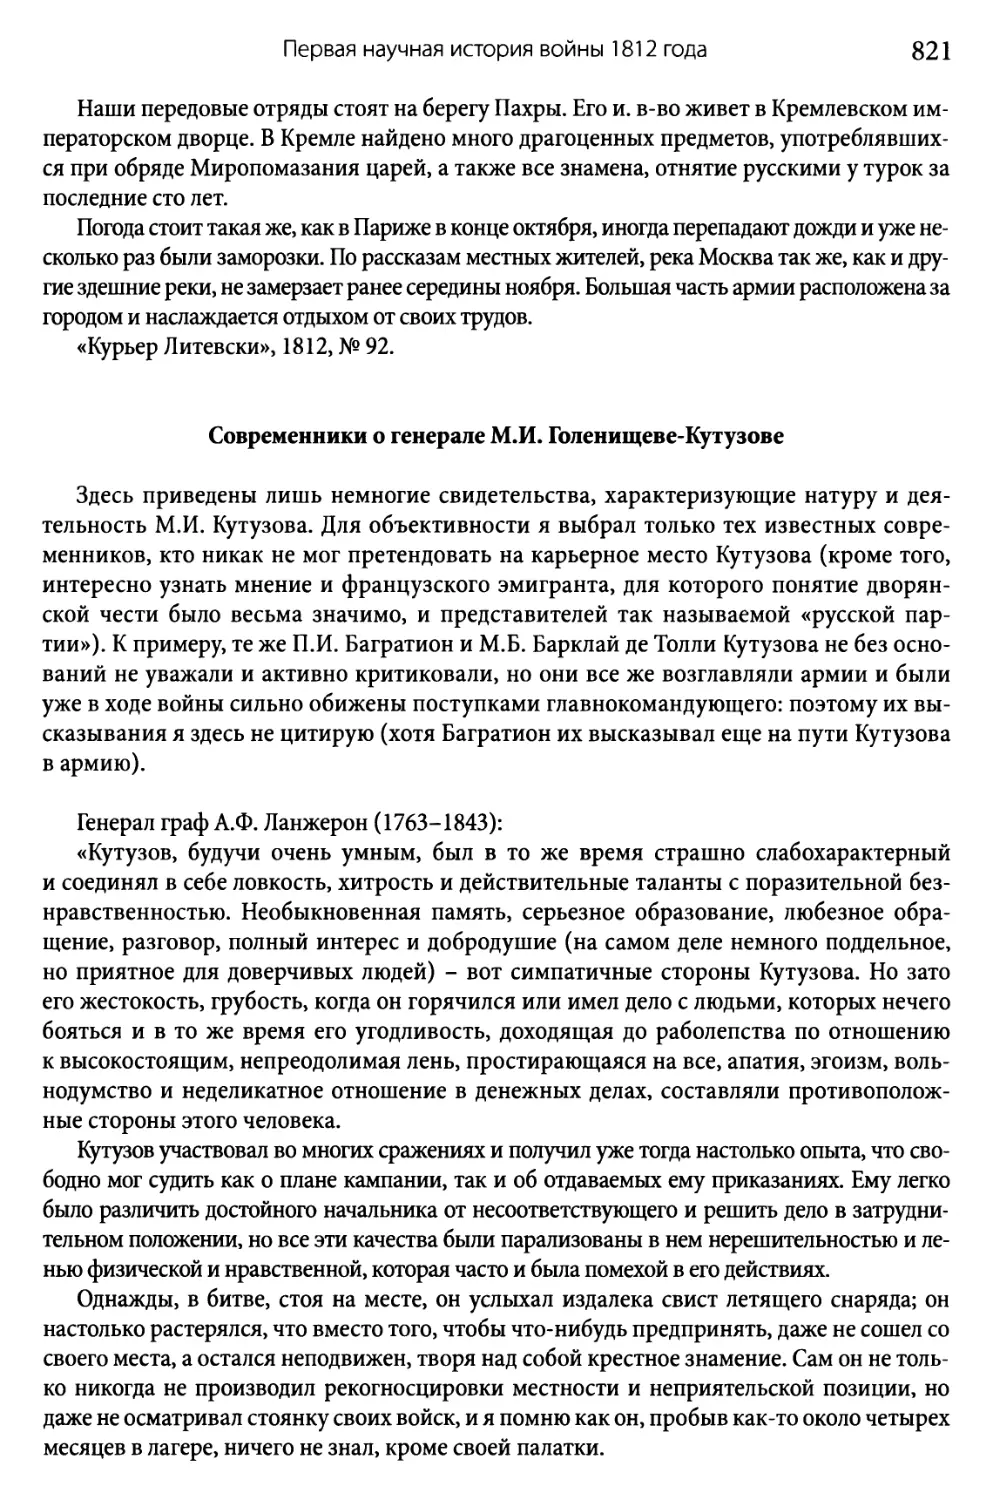 Современники о генерале М.И. Голенищеве-Кутузове